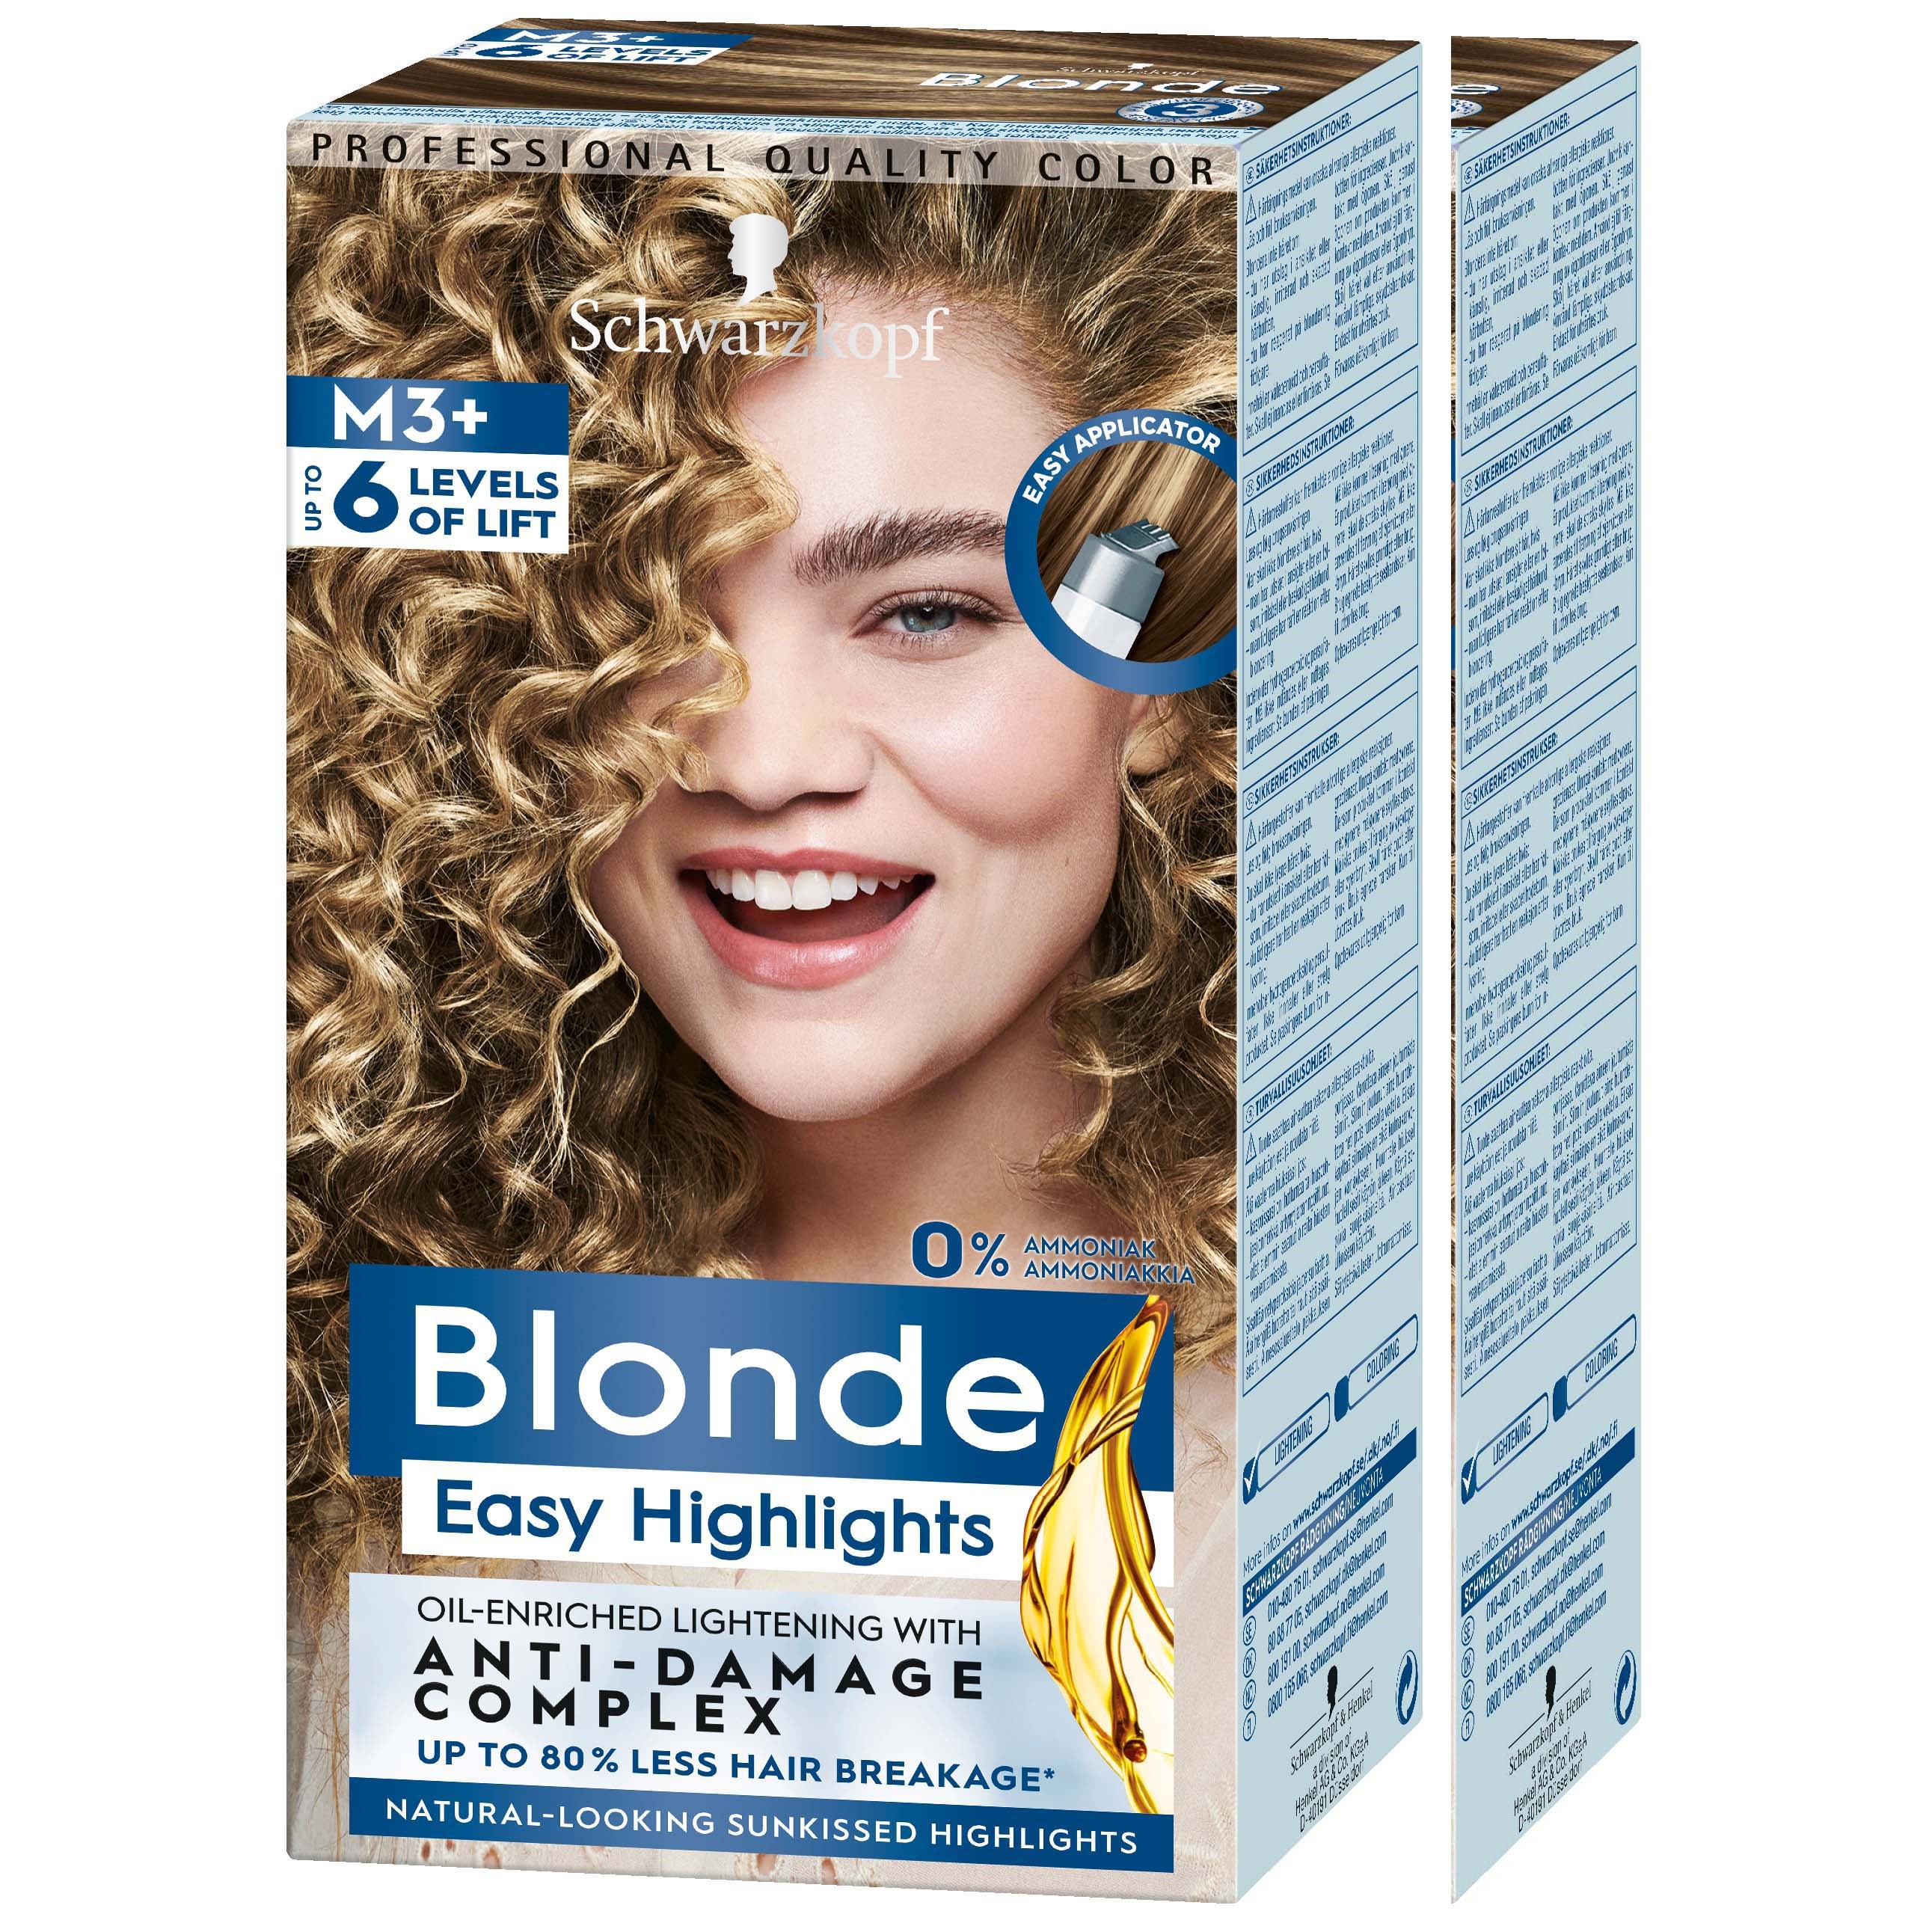 Schwarzkopf Blonde M3+ Highlights -2 pack